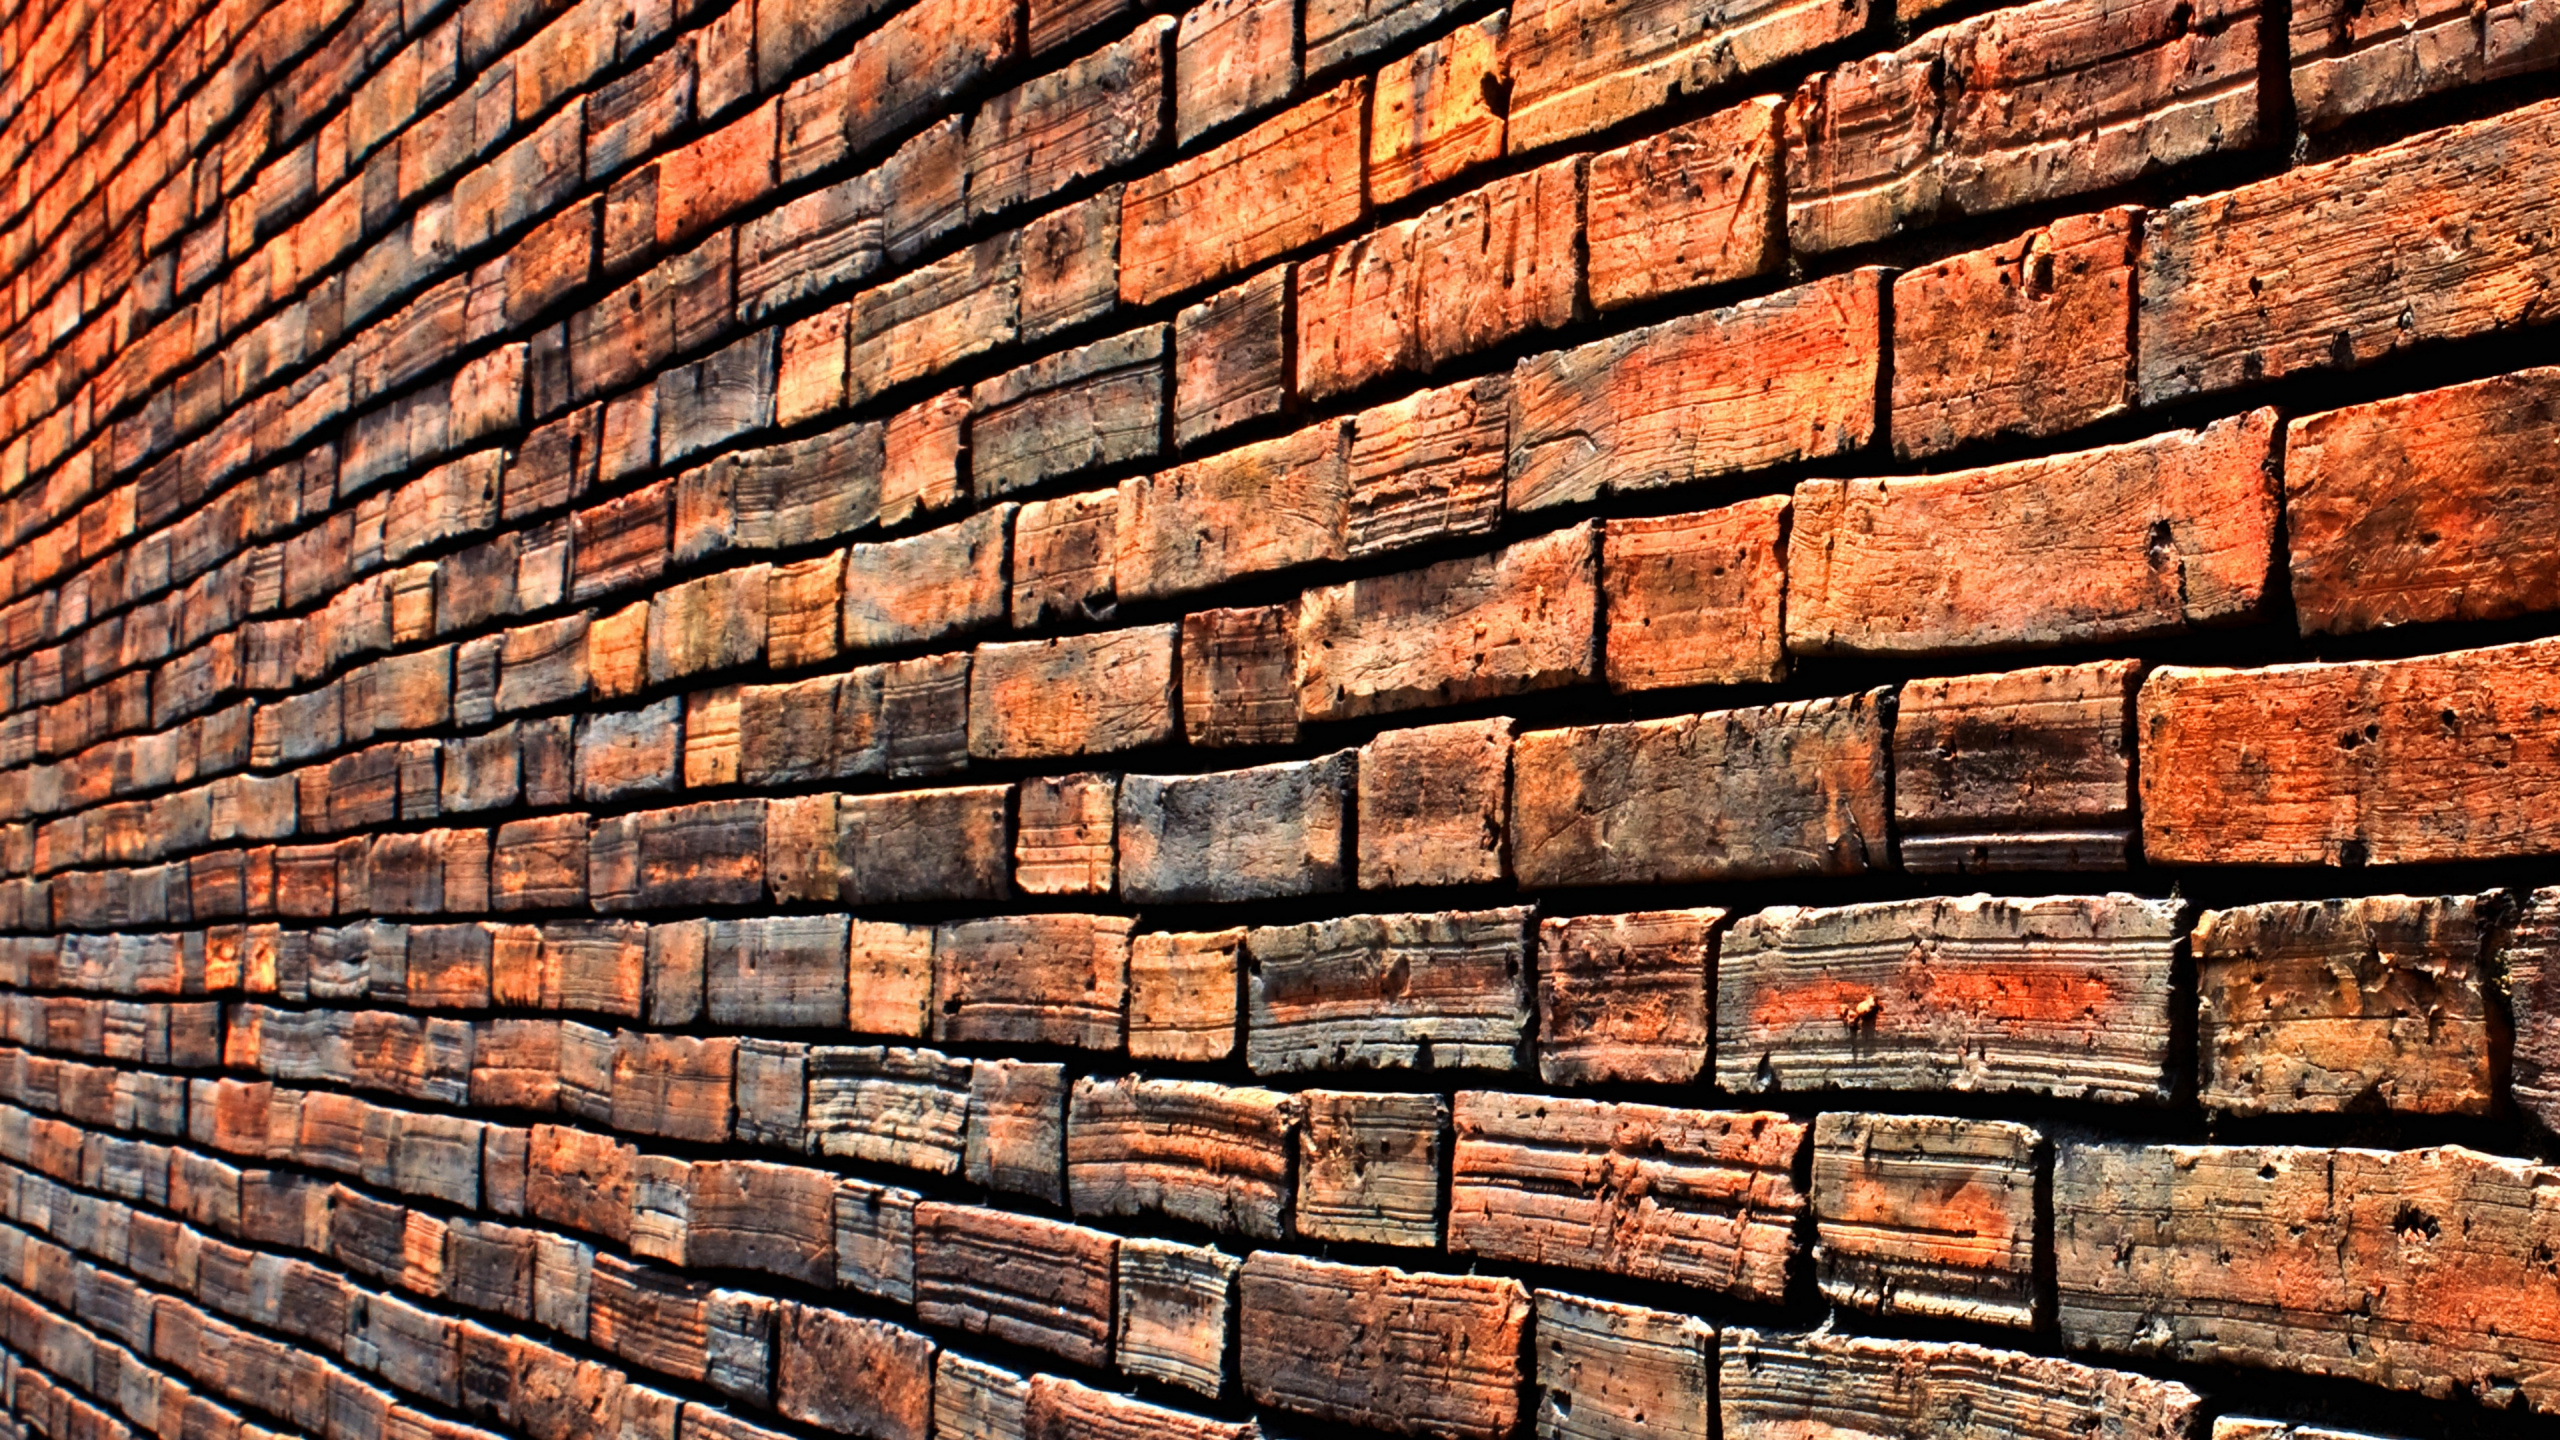 砌砖, 砖, 石壁, 木染色, 木材 壁纸 2560x1440 允许